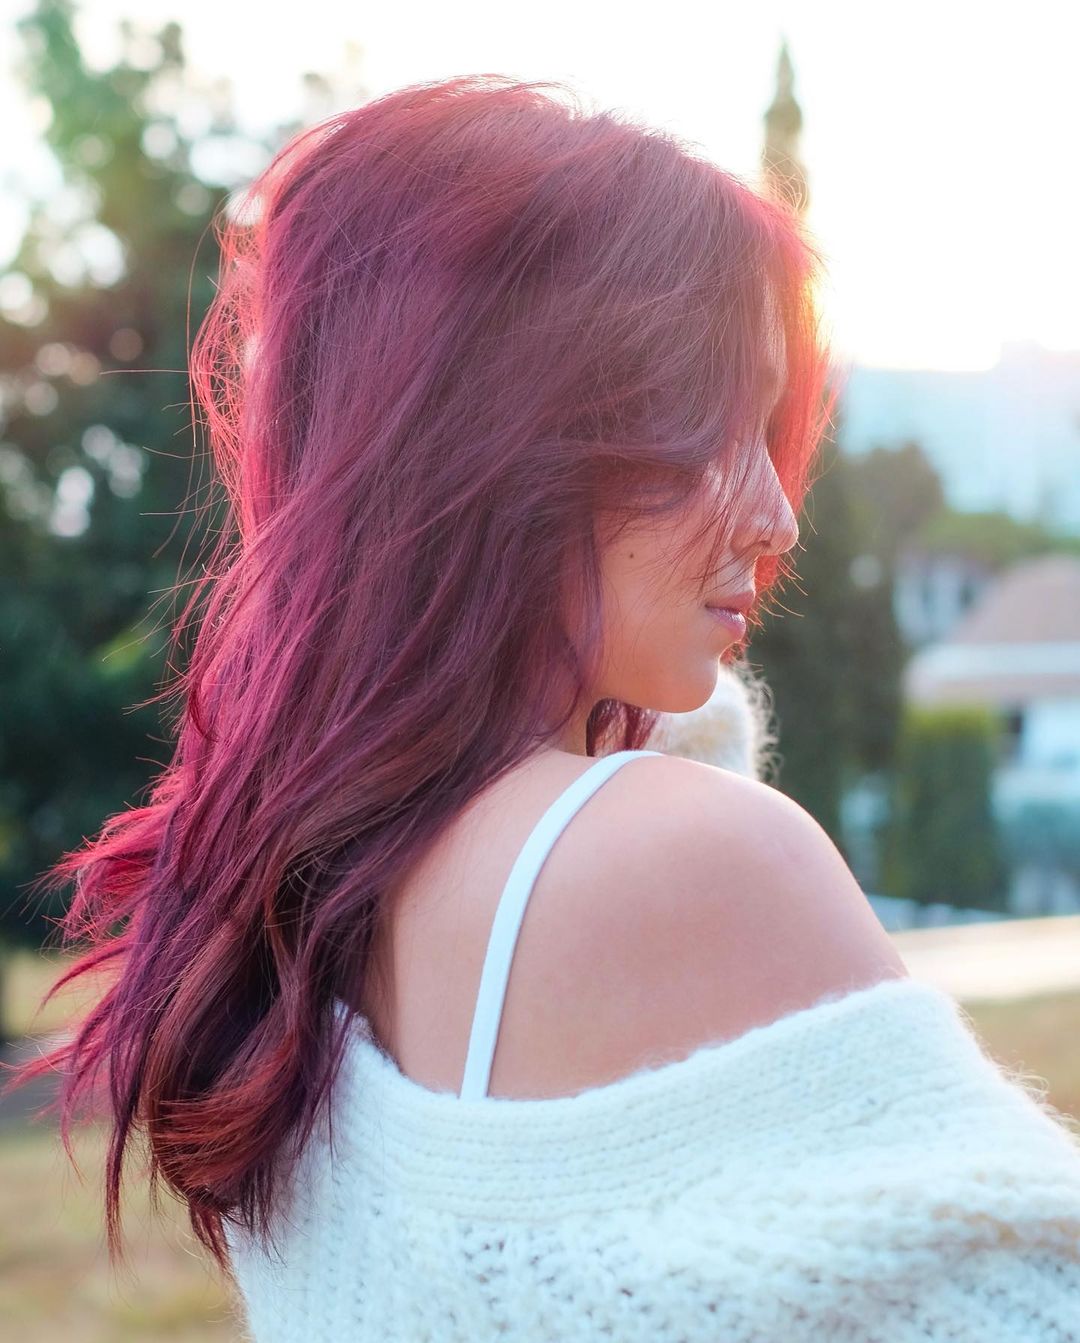 Look: Kathryn Bernardo's New Red Hair Color